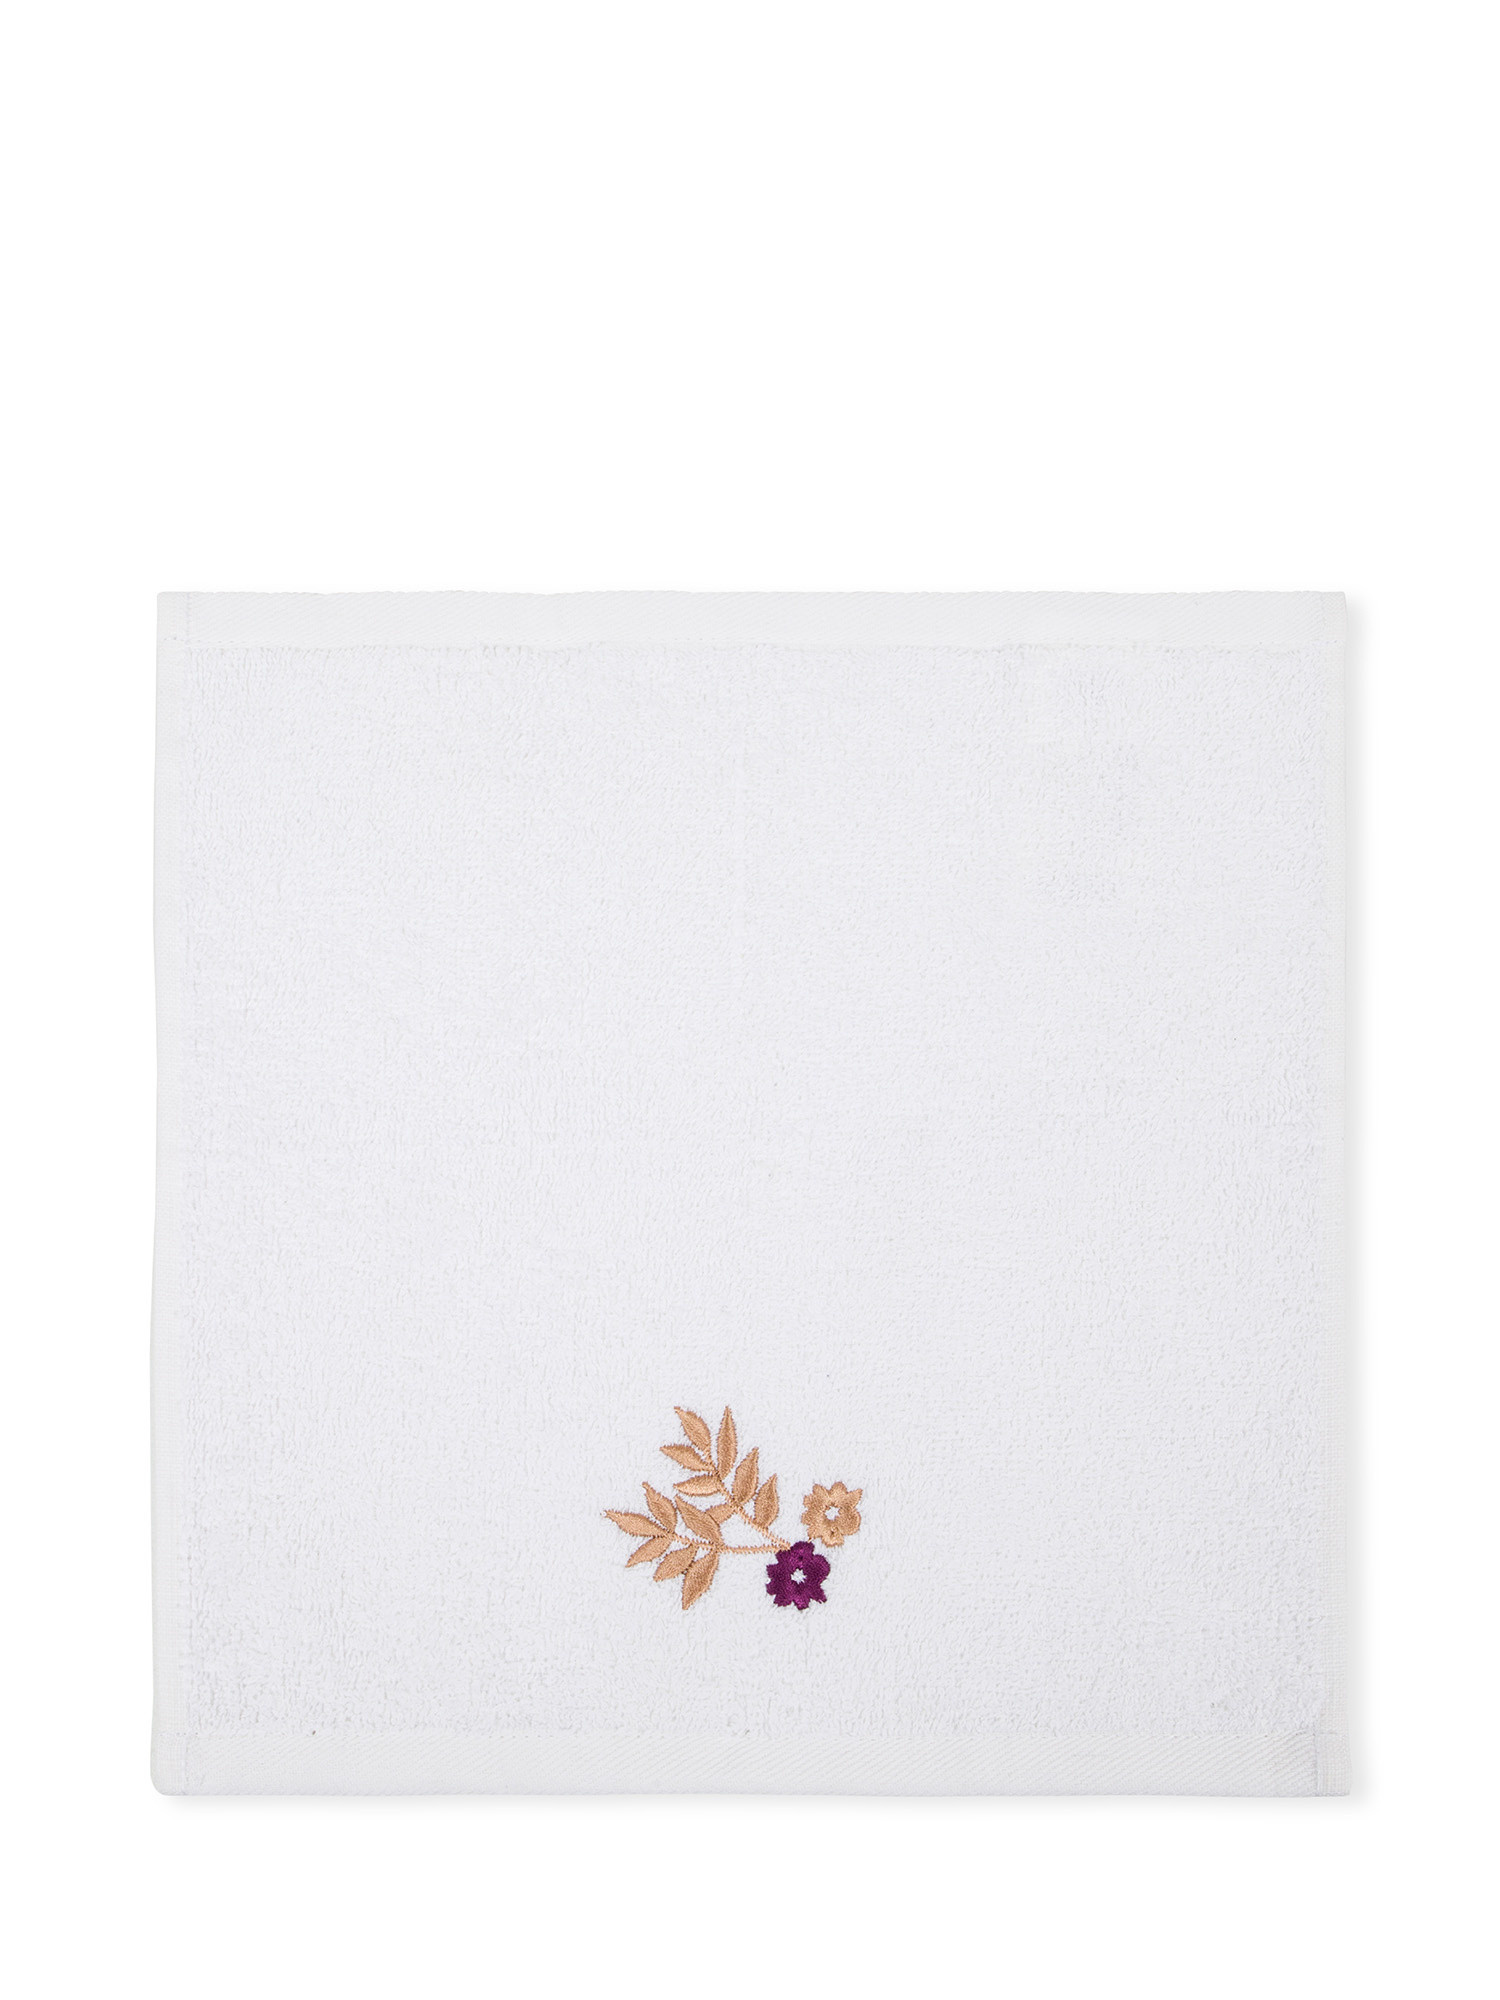 Set 3 lavette in spugna di cotone con ricamo floreale, Viola, large image number 1